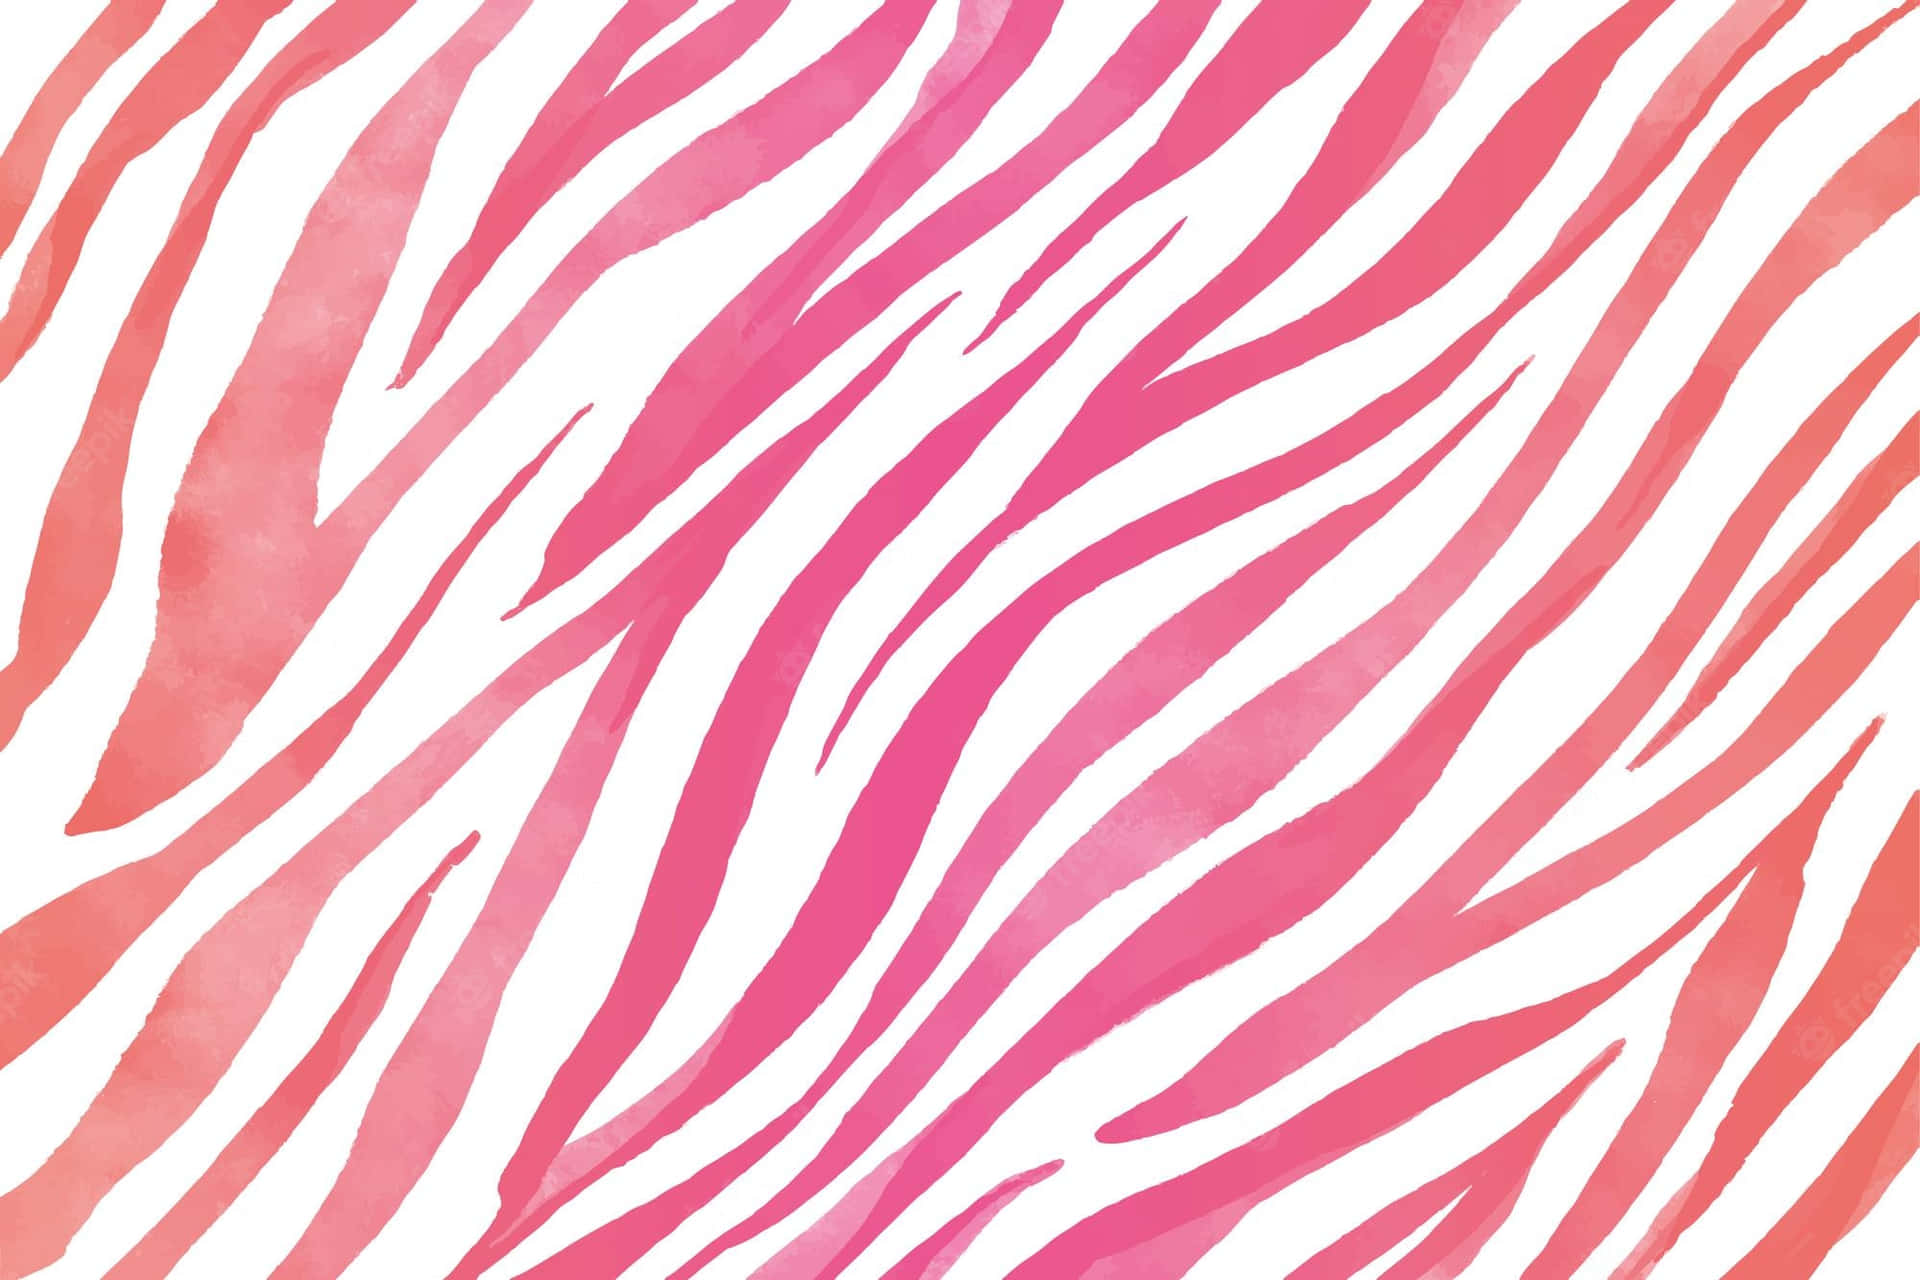 Modelloa Stampa Zebra Arancione E Rosa. Sfondo